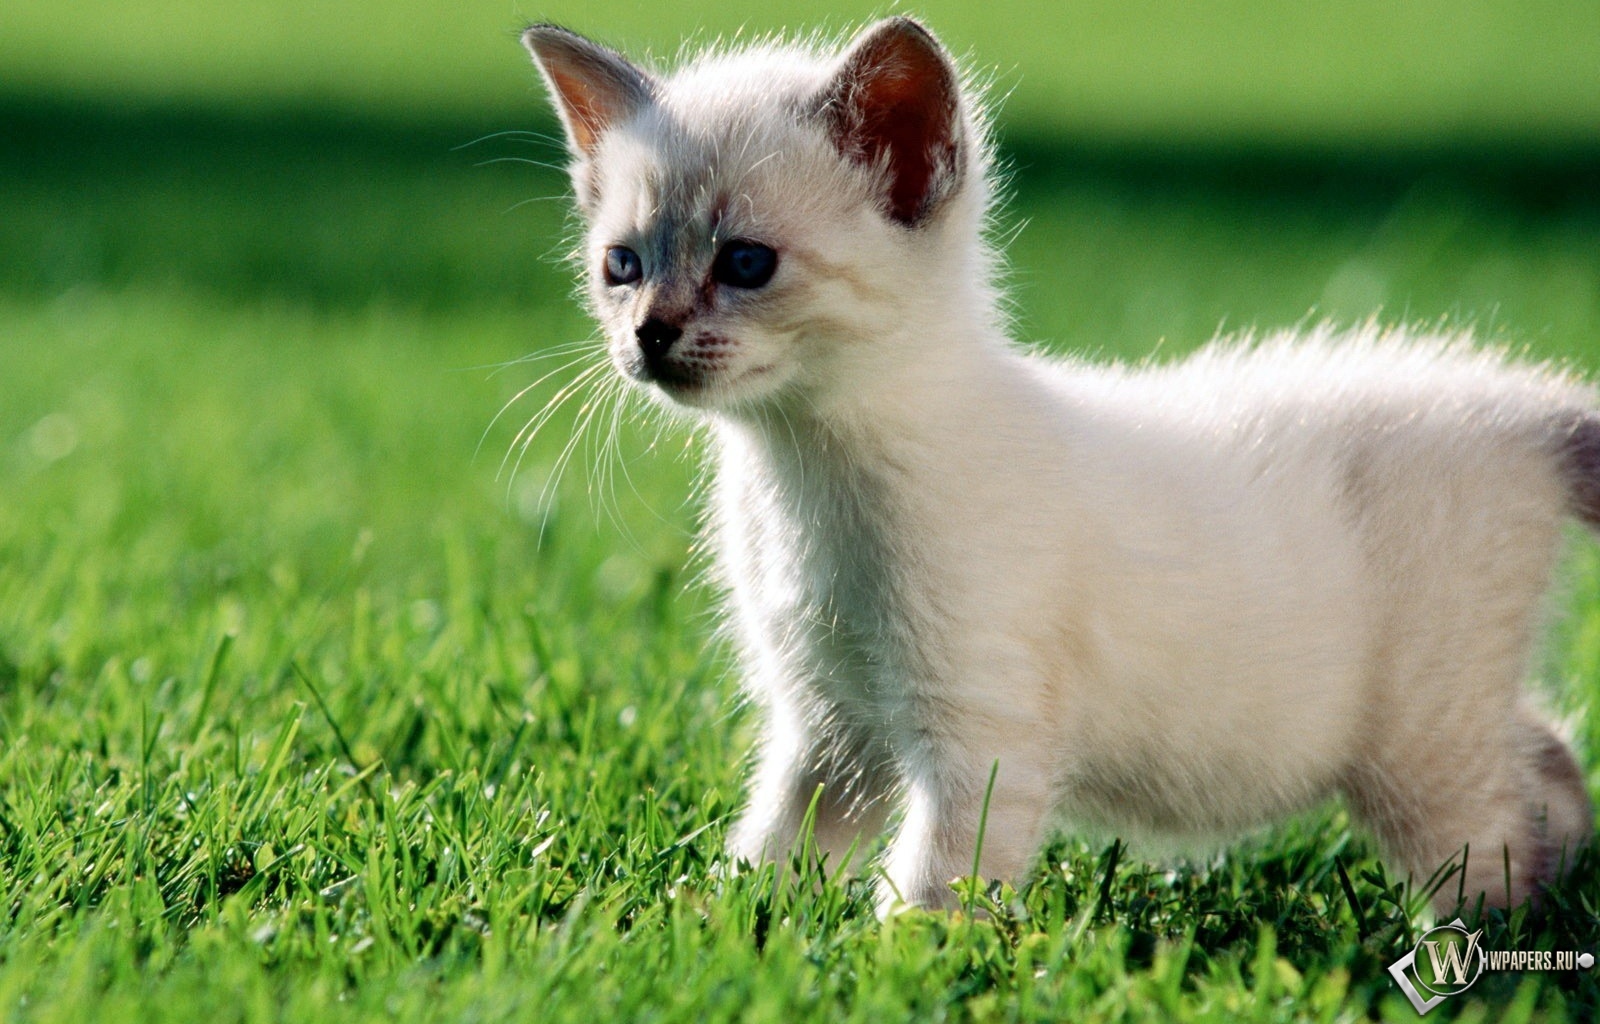 Котёнок на траве 1600x1024